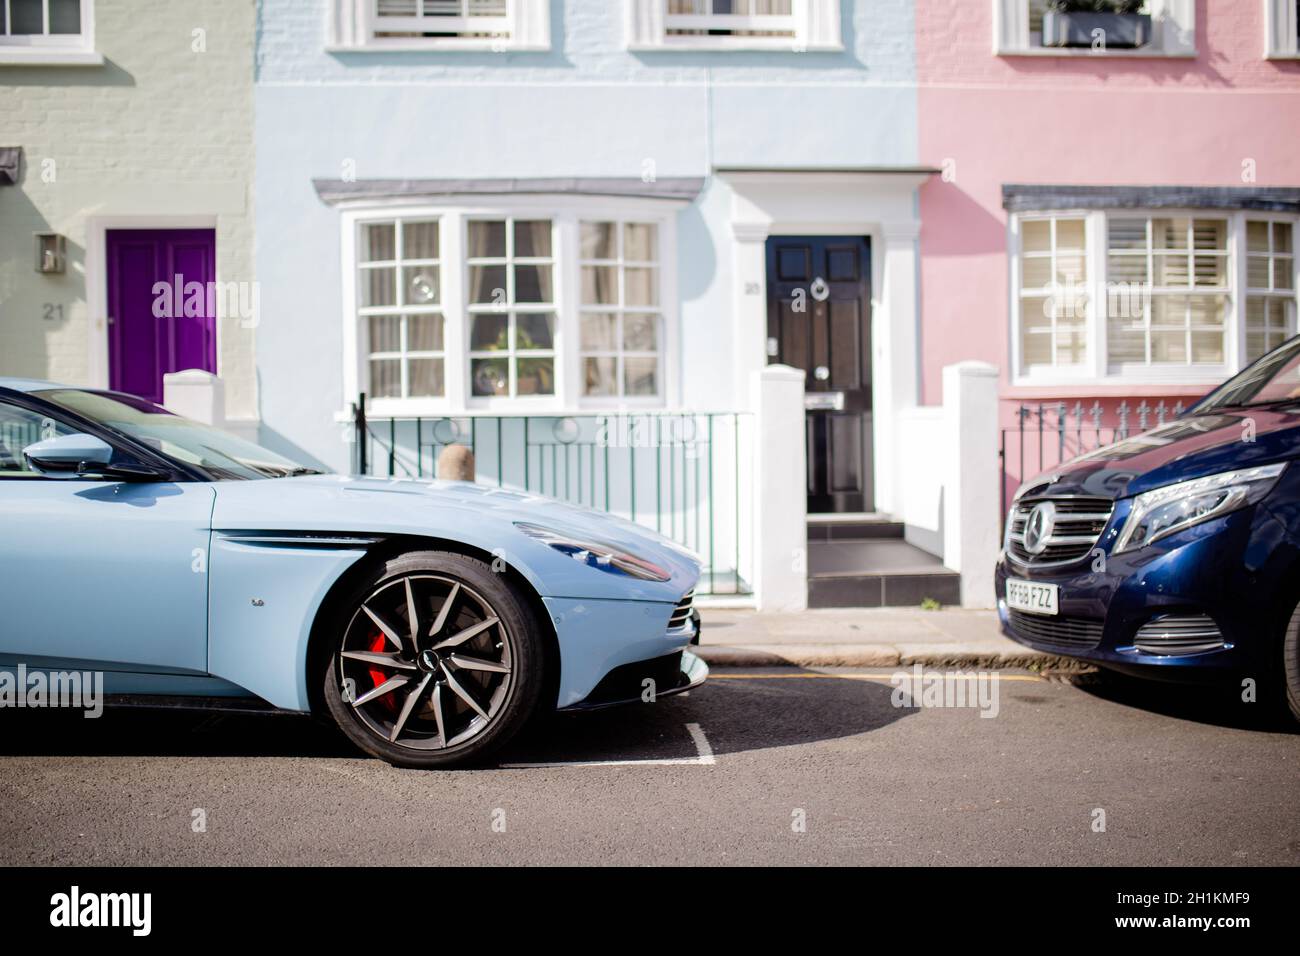 Londres, Reino Unido - 30 de septiembre de 2020: Imagen del lado lateral de un automóvil deportivo azul claro estacionado fuera de una casa azul desde un barrio británico Foto de stock